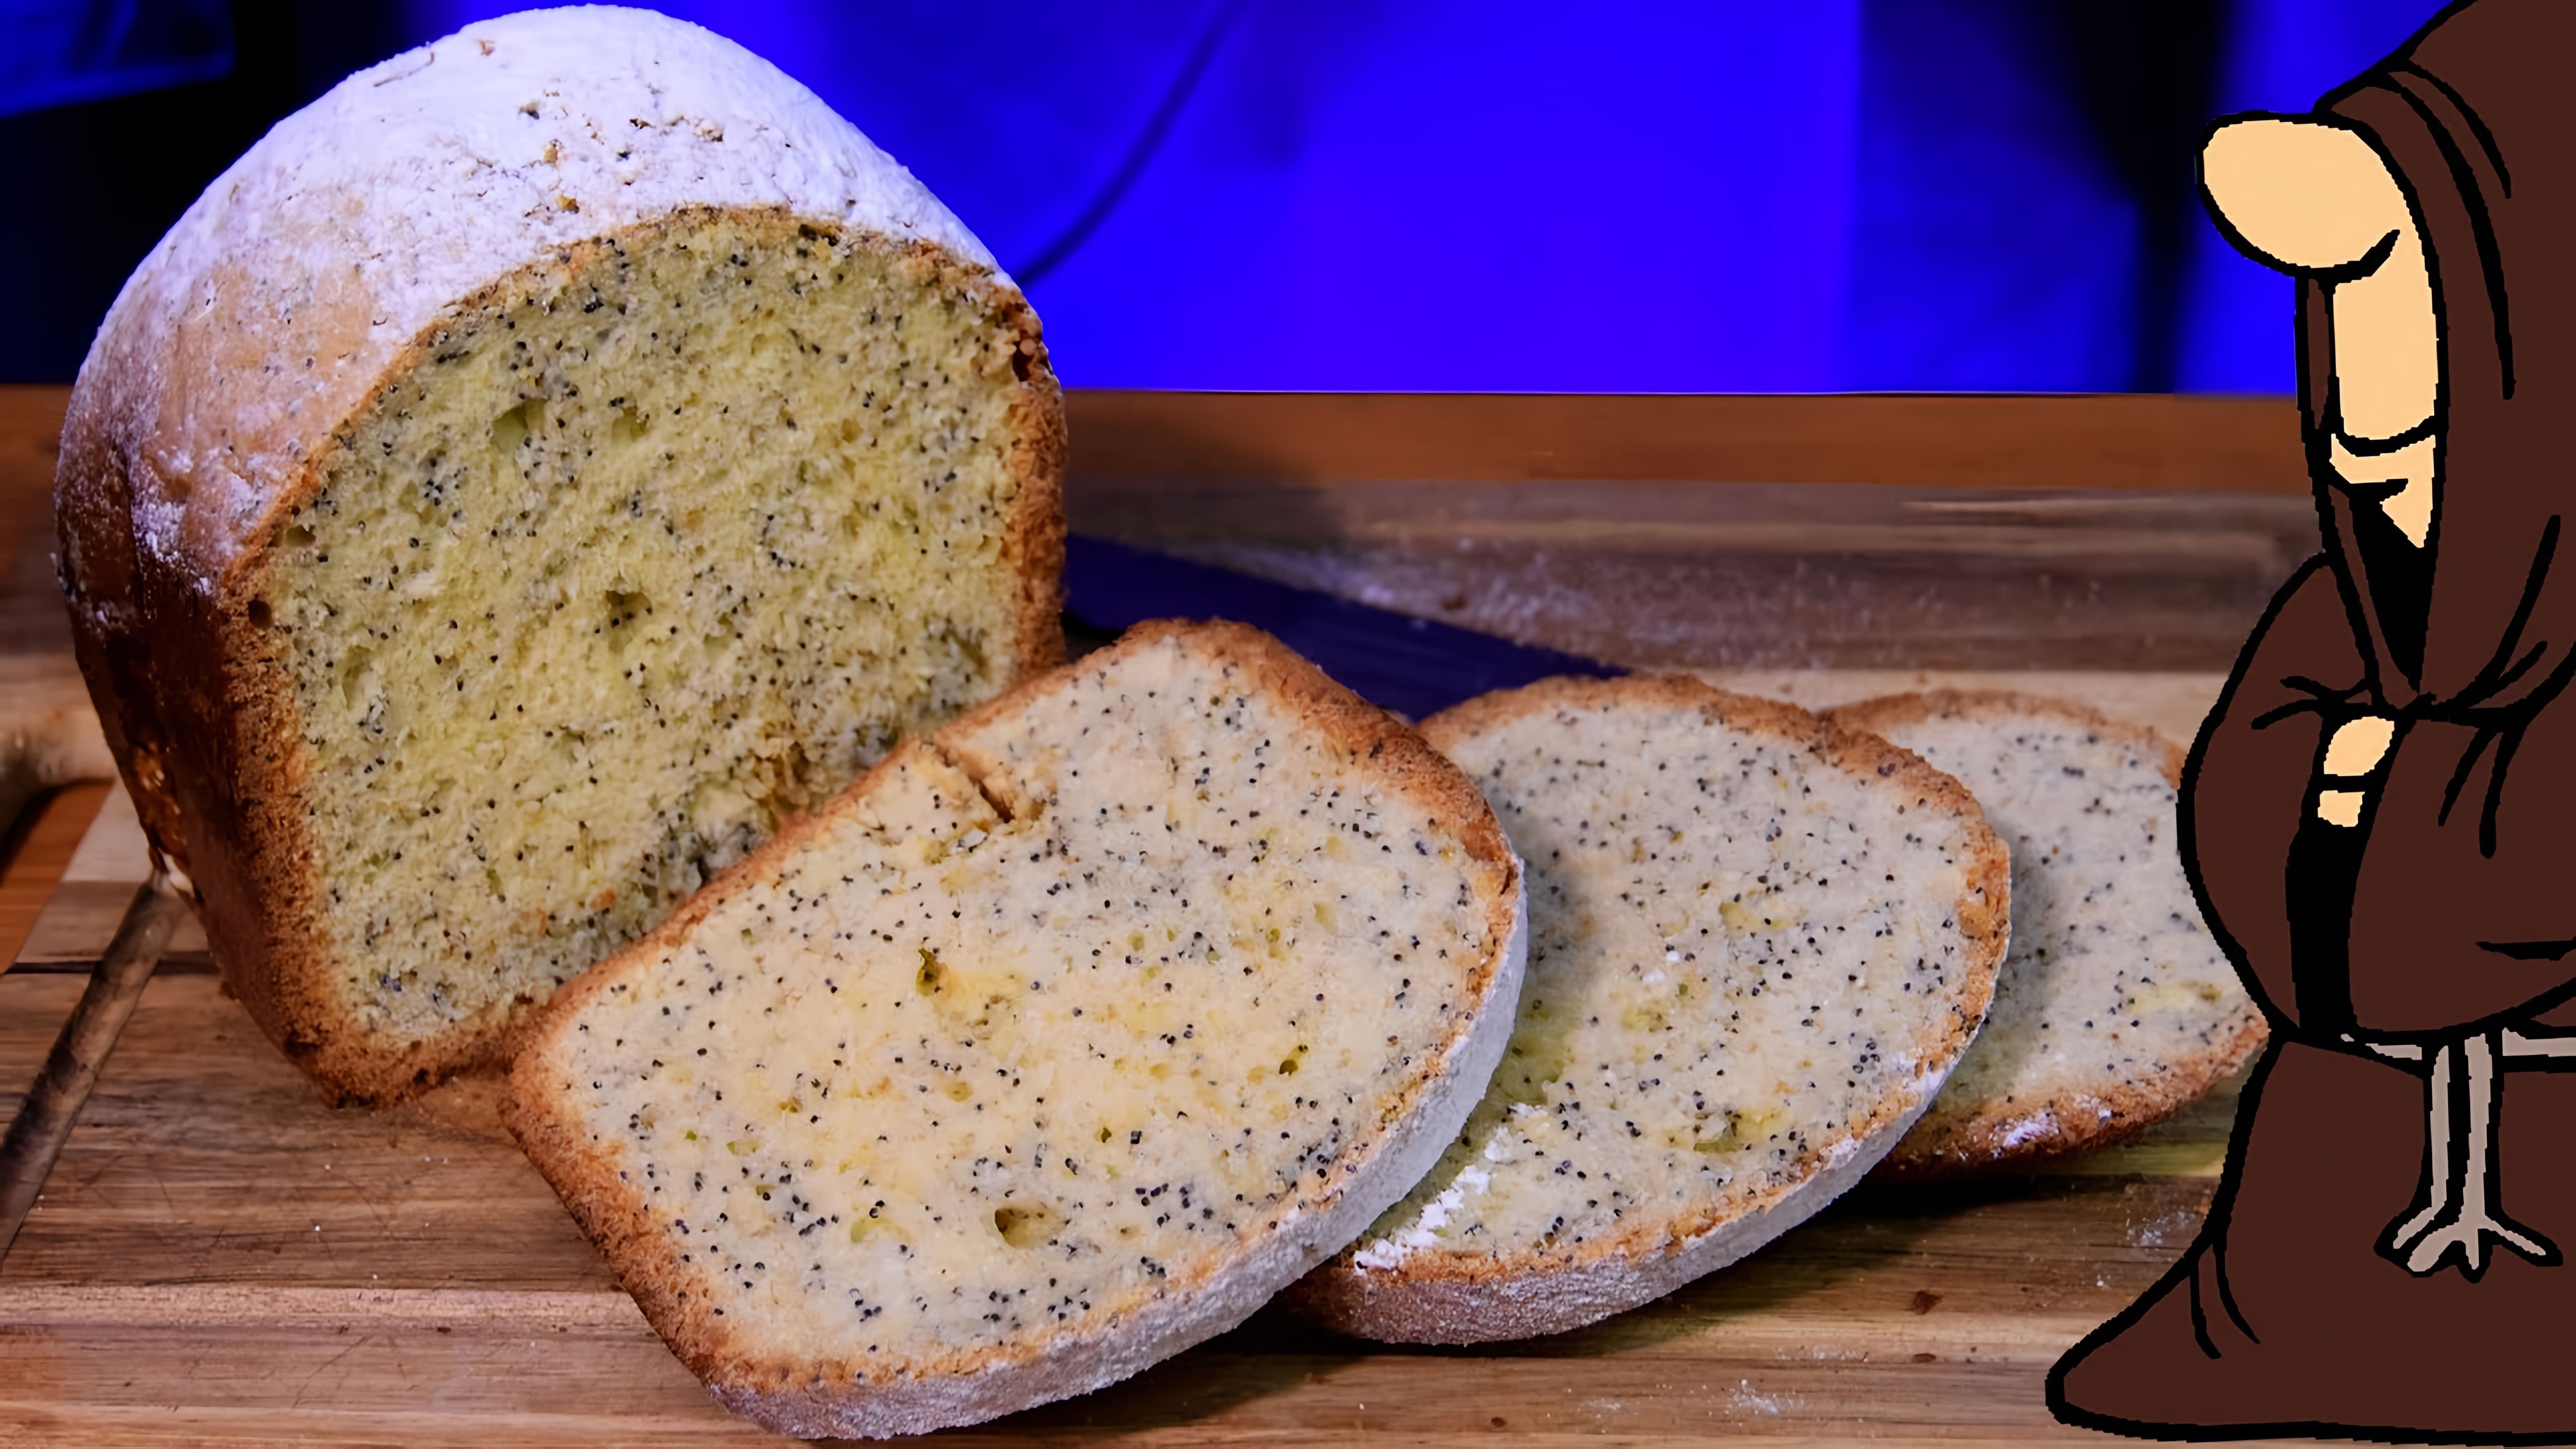 В этом видео демонстрируется процесс приготовления кекса с маком в хлебопечке